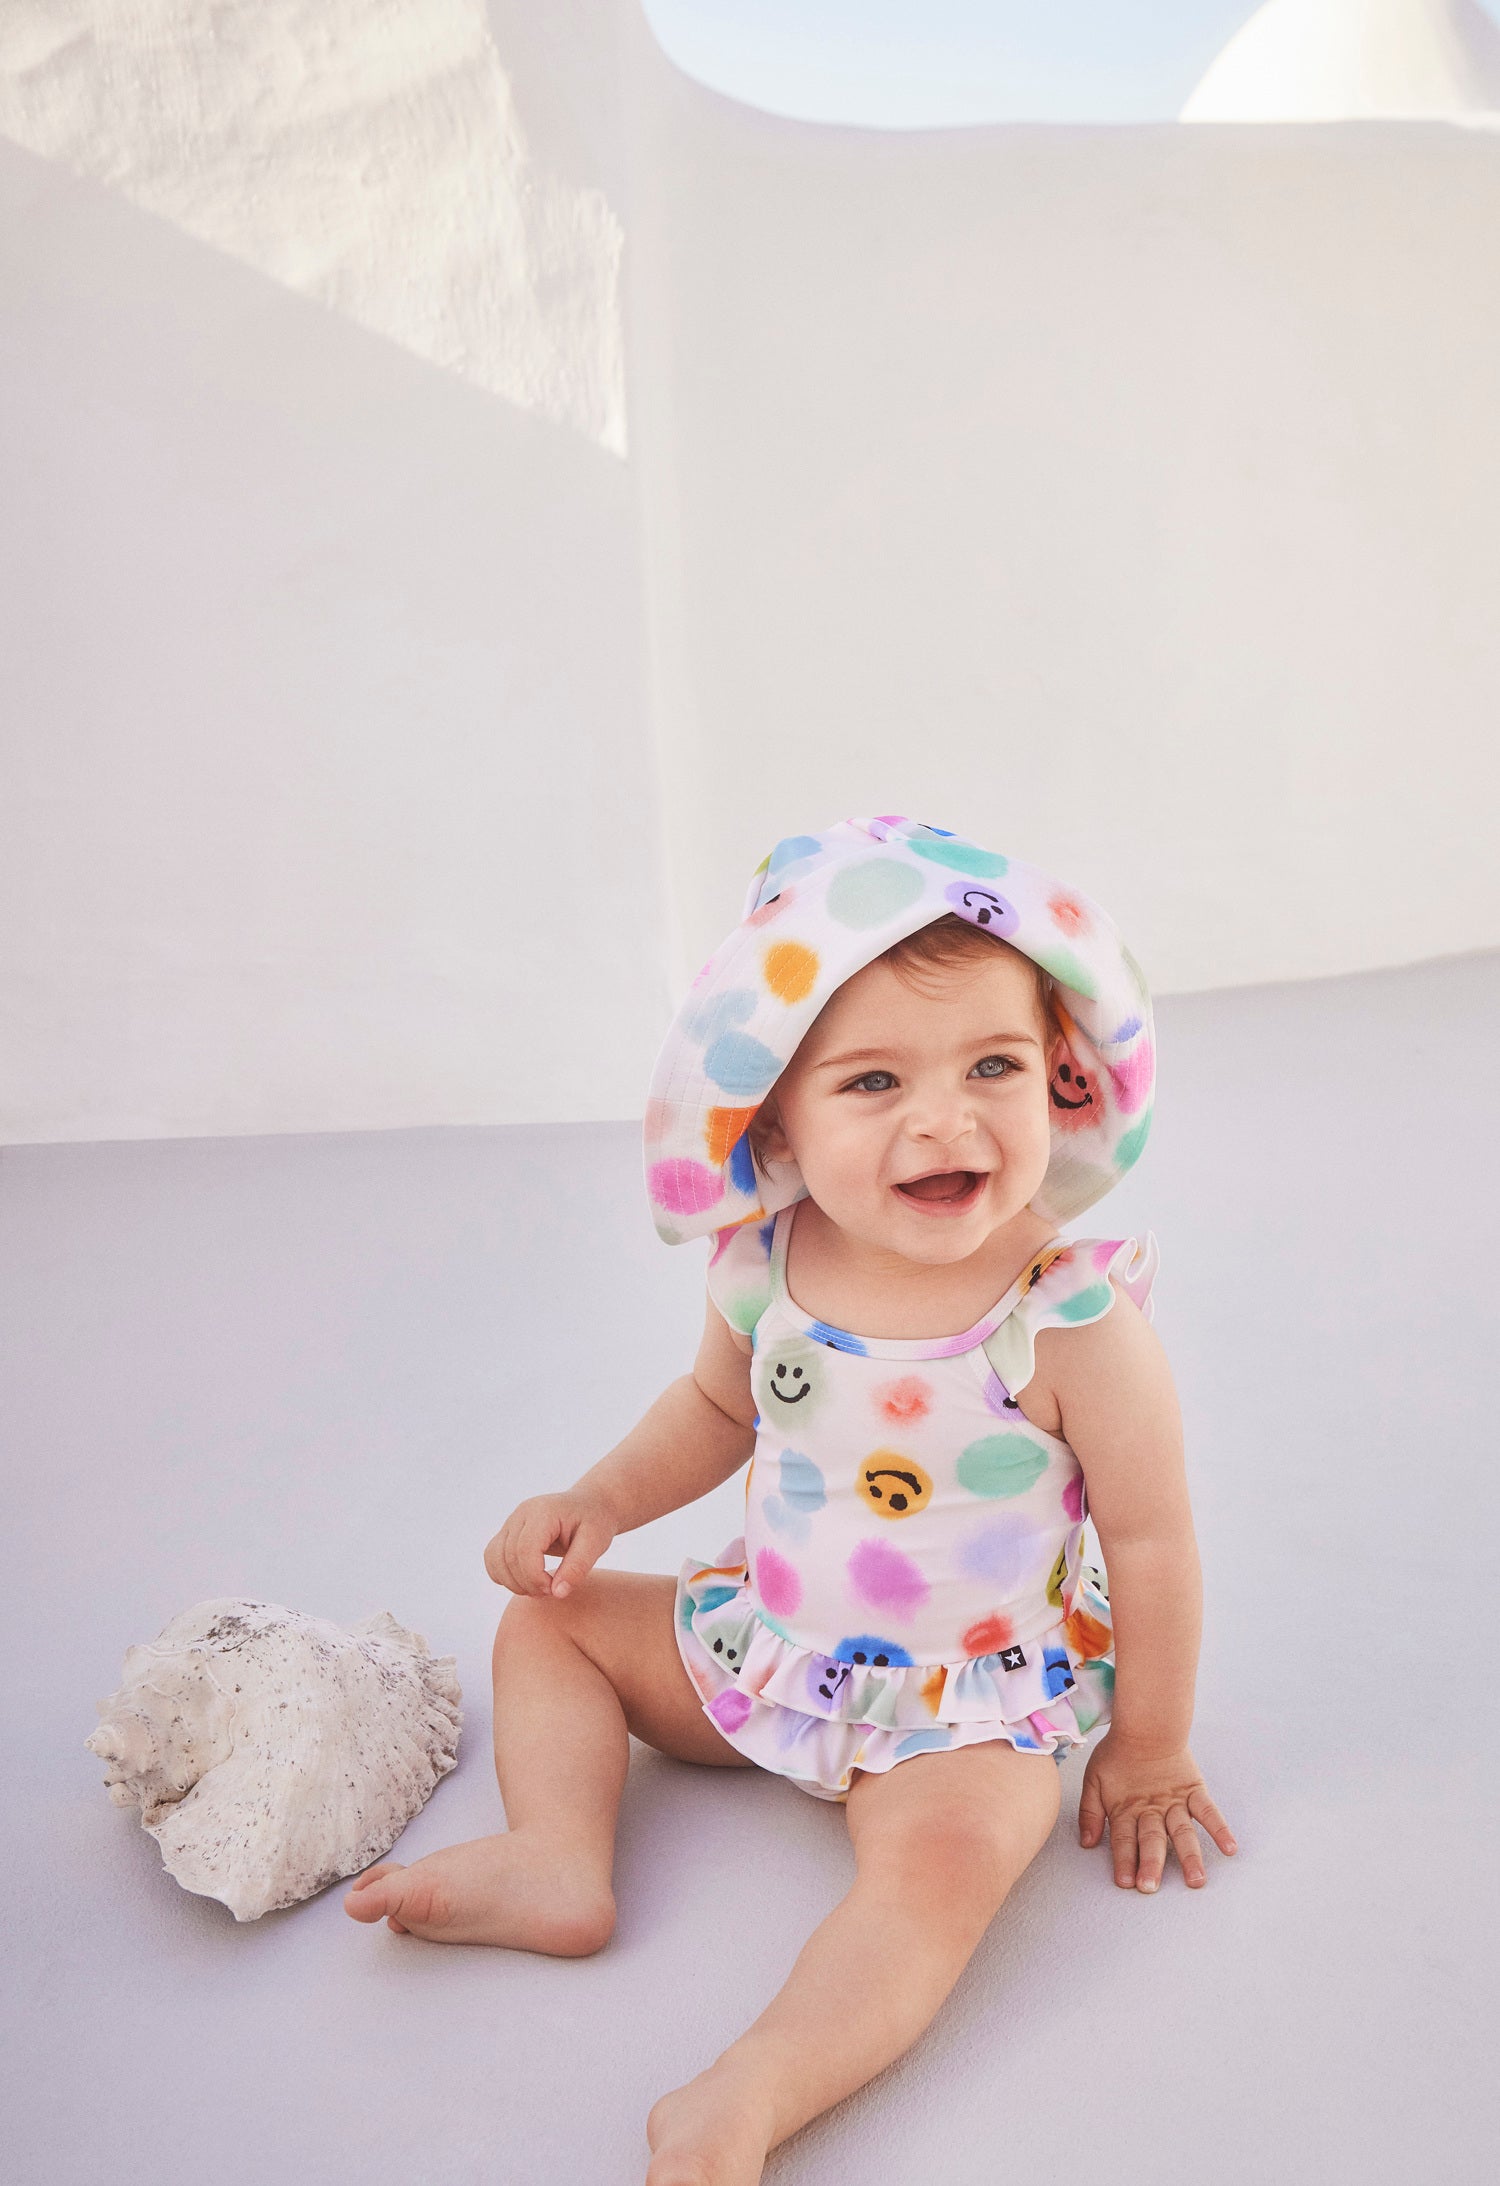 Molo Nalani Baby Swimsuit - Painted Dots